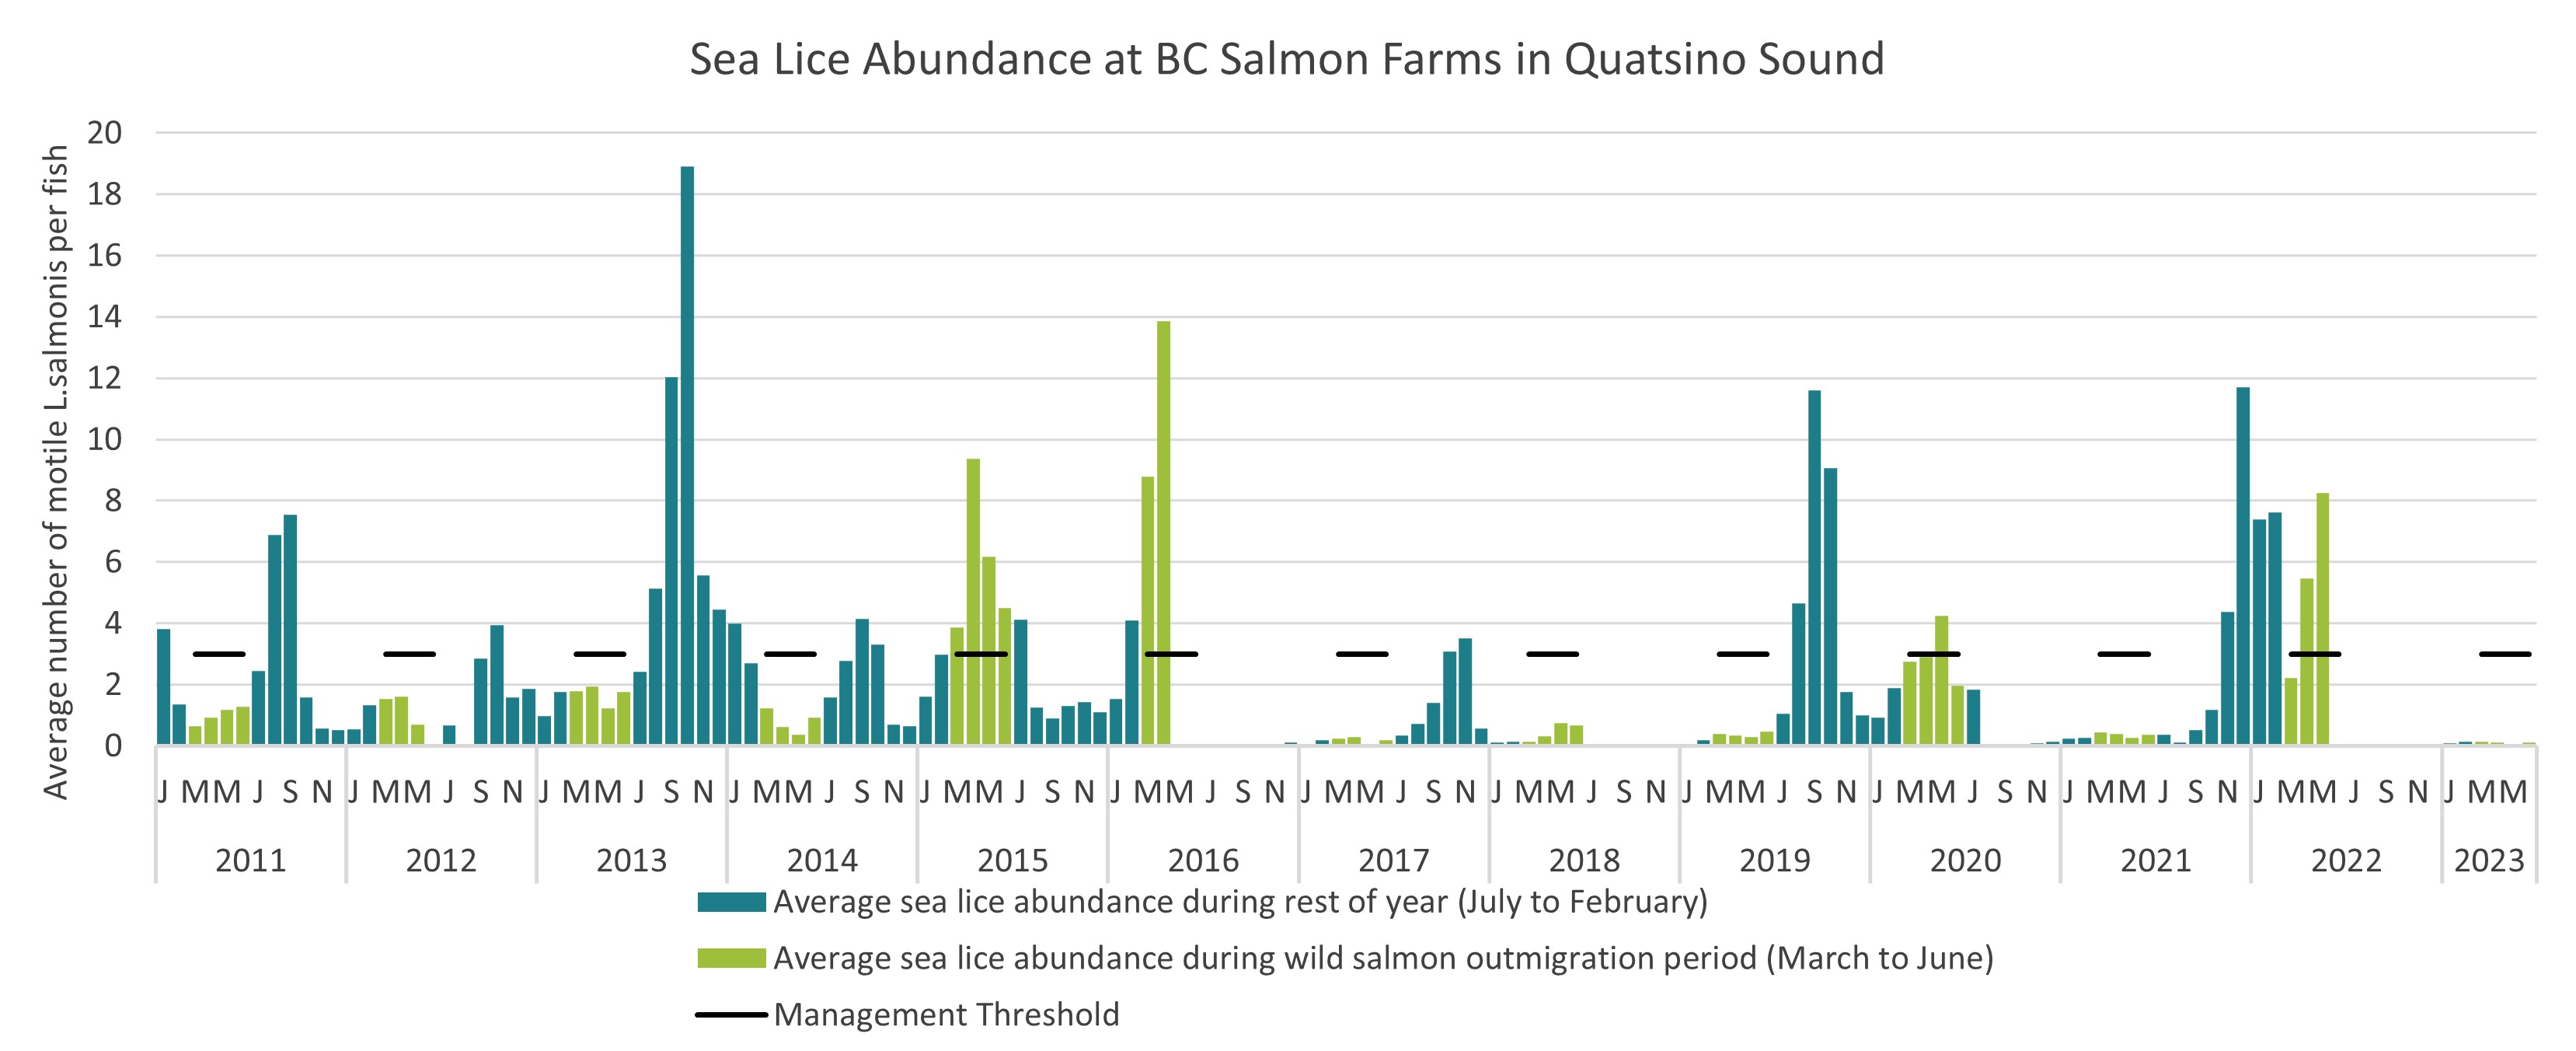 Sea Lice Abundance at BC Salmon Farms in the Quatsino Sound area, 2011 to 2022